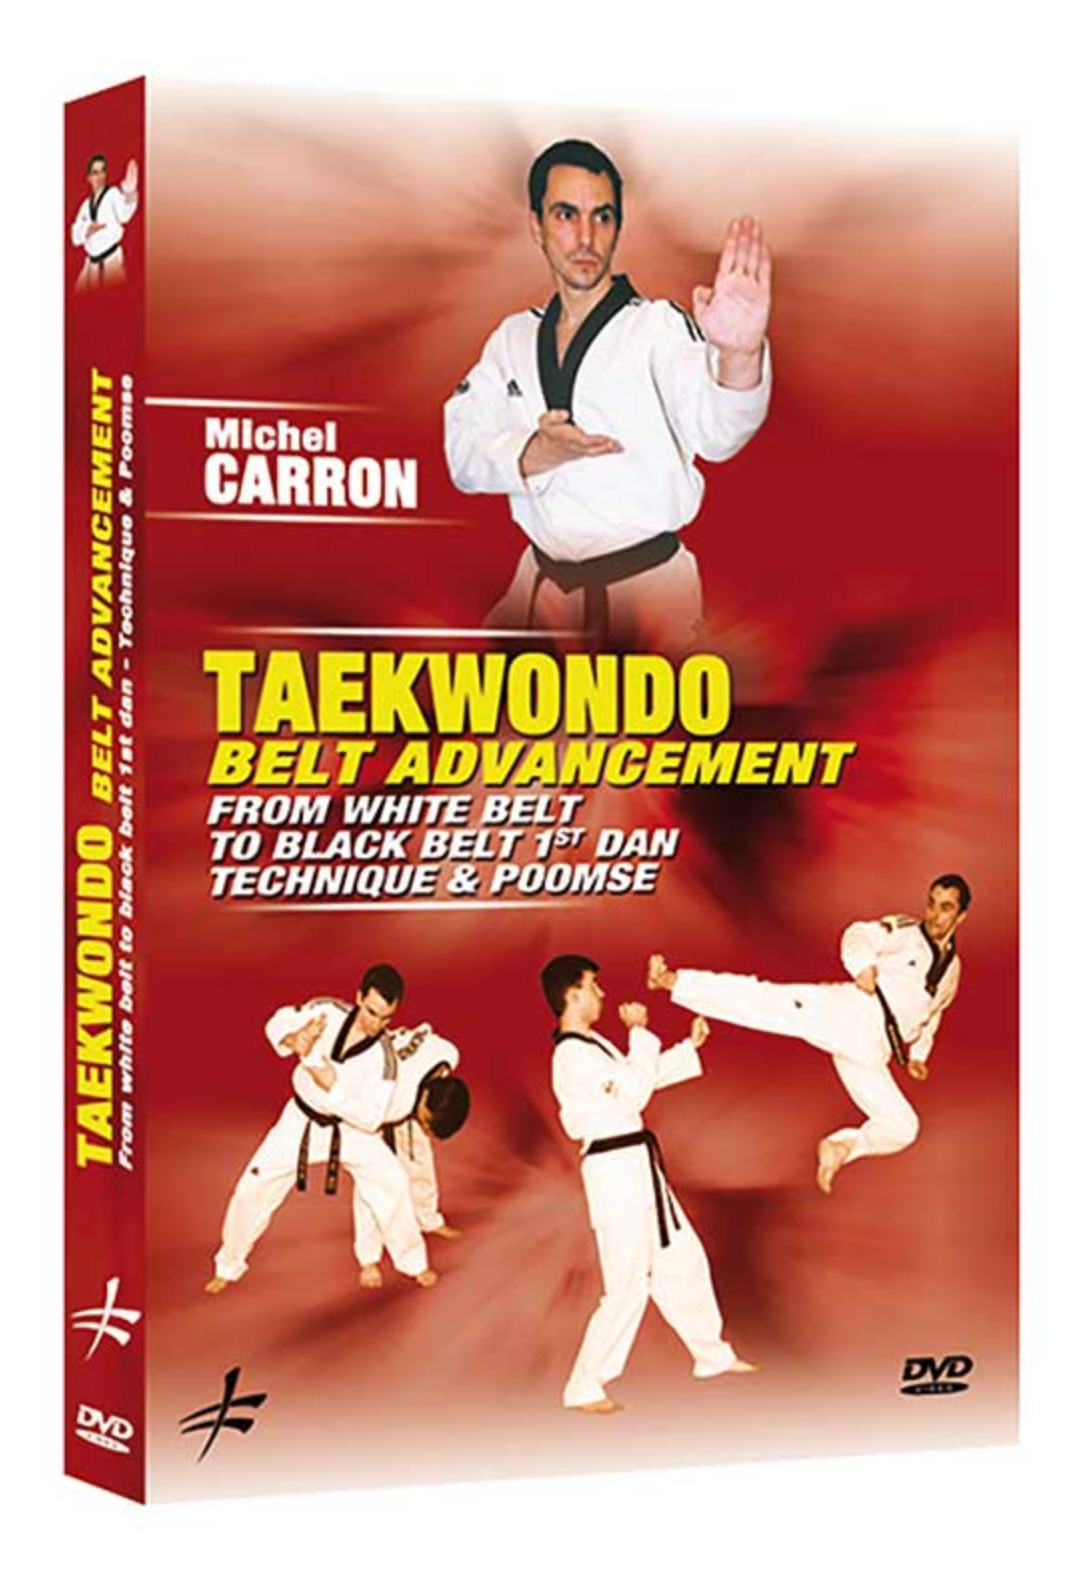 Taekwondo - From White Belt to Black Belt 1st Dan DVD